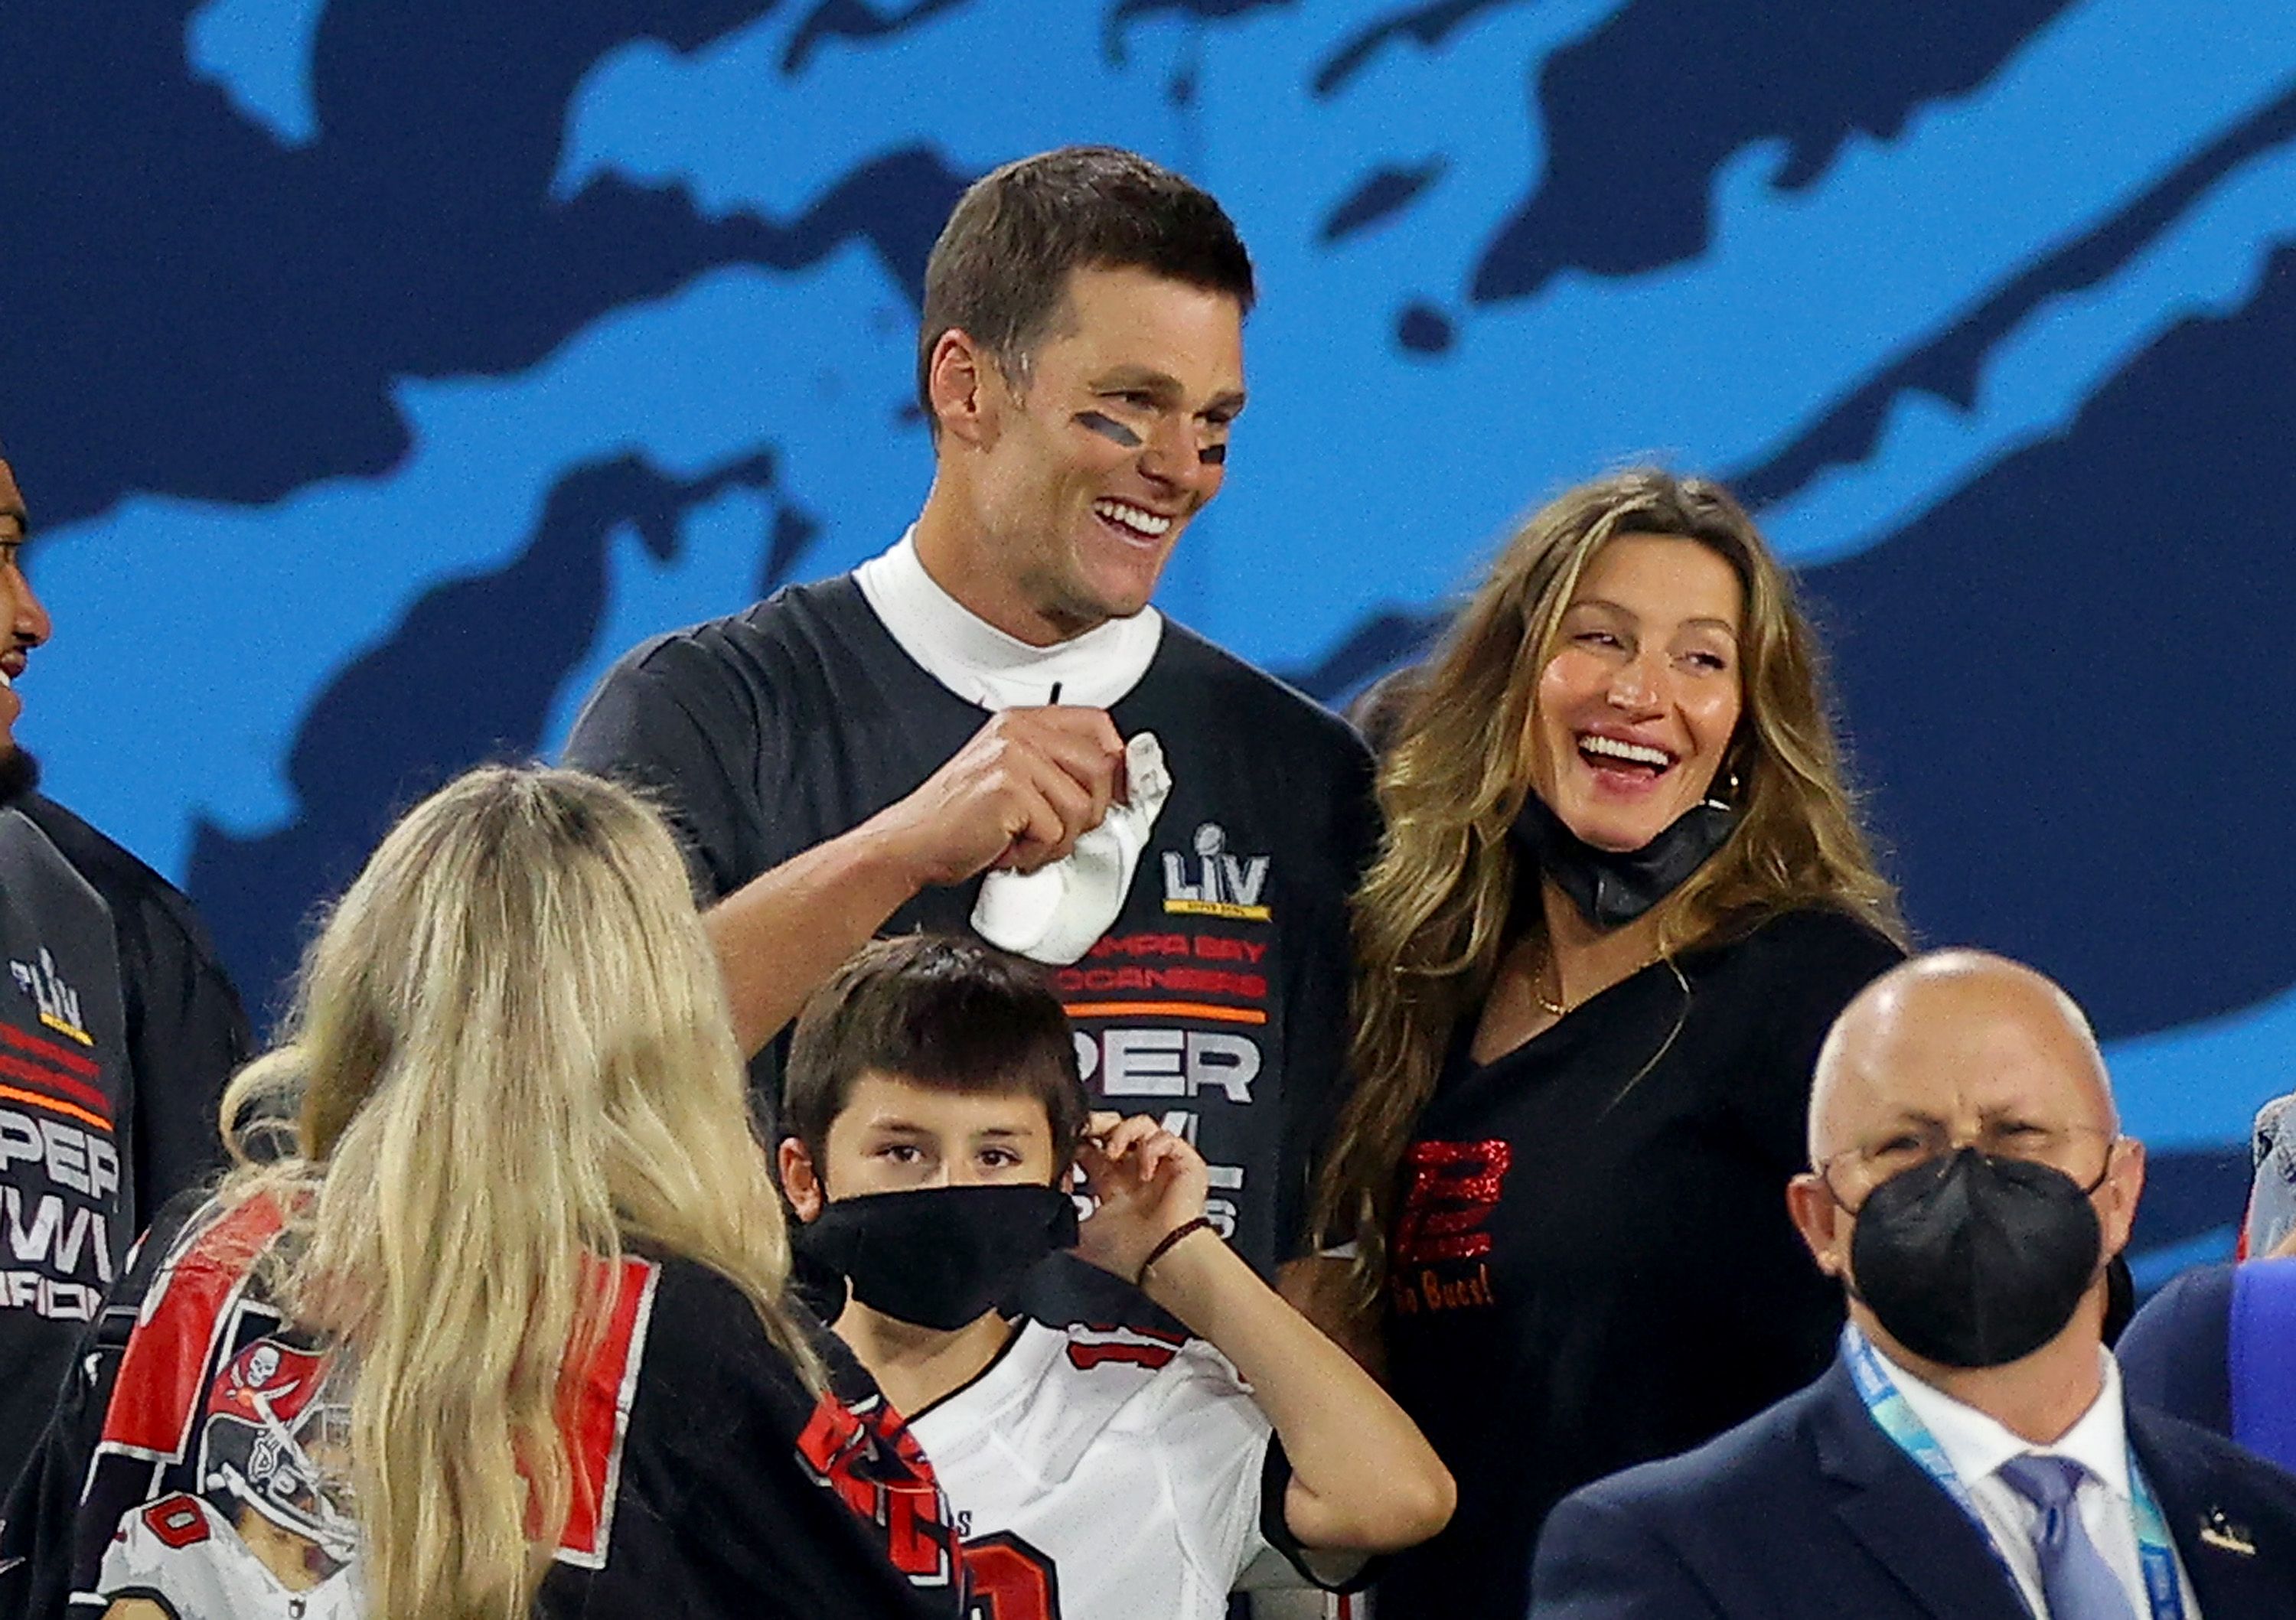 Tom Brady has reason to celebrate following Gisele Bundchen divorce -  details